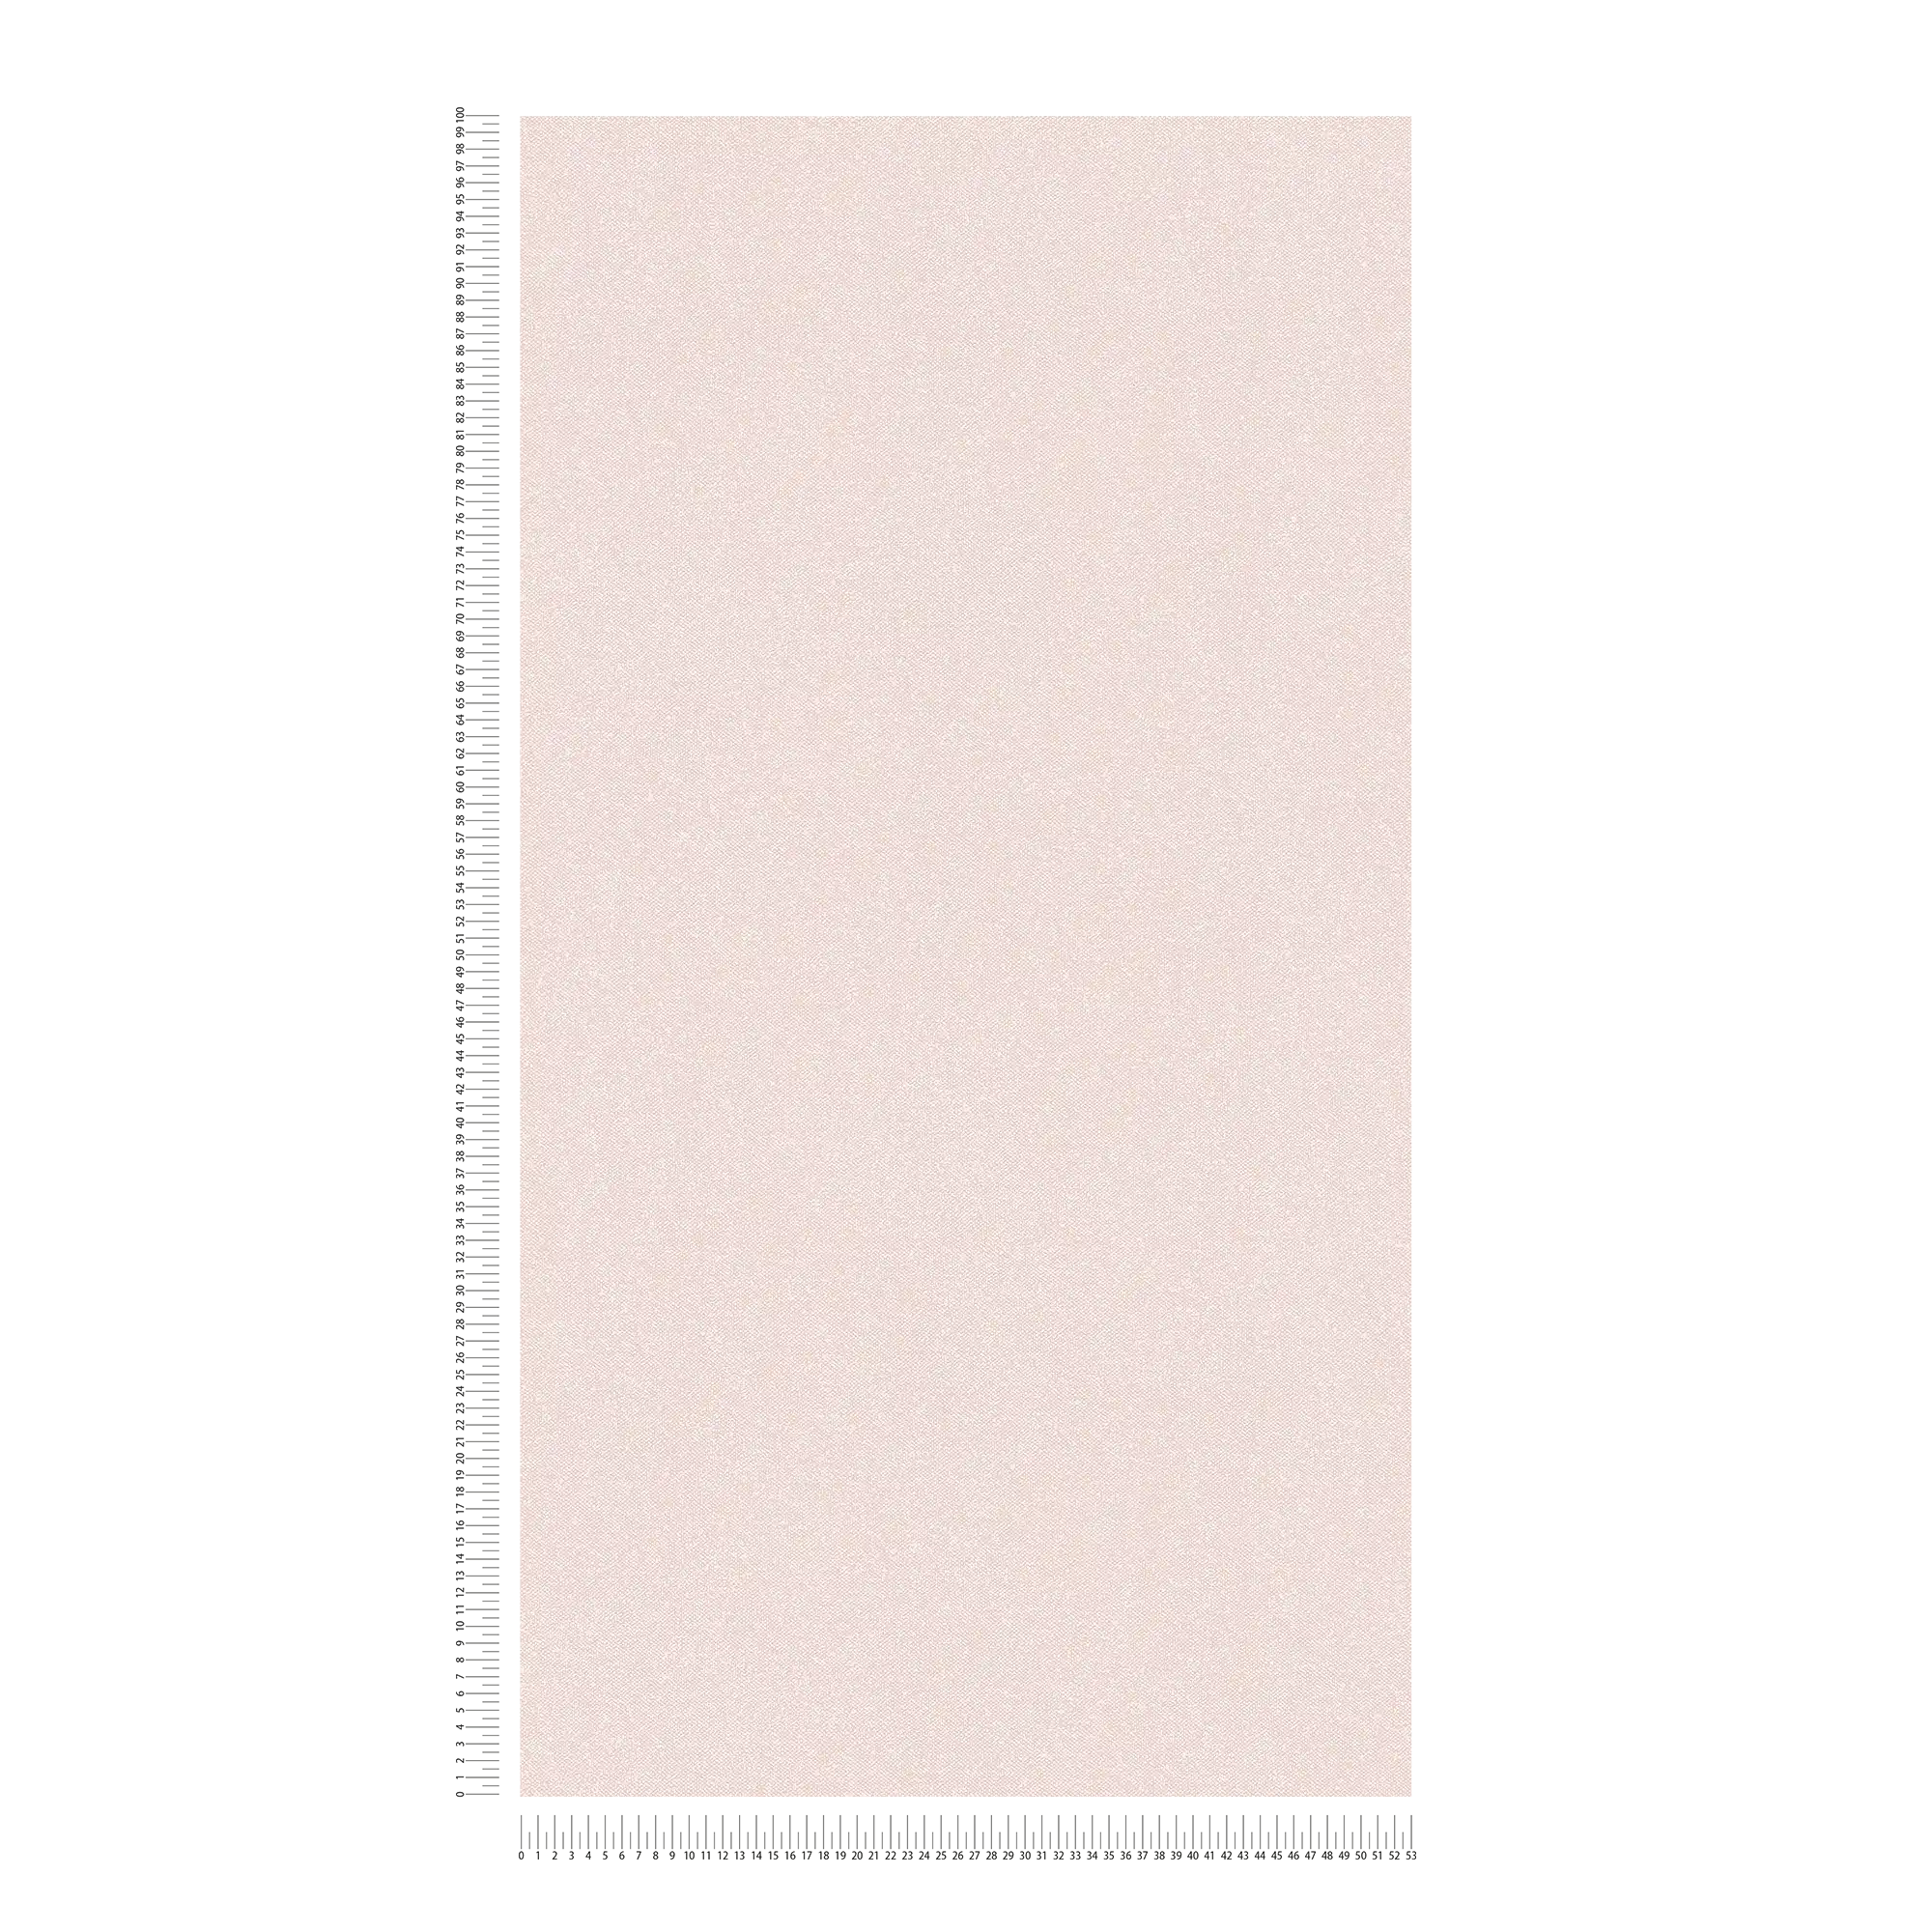             Textiel-look behangpapier effen - roze, crème, wit
        